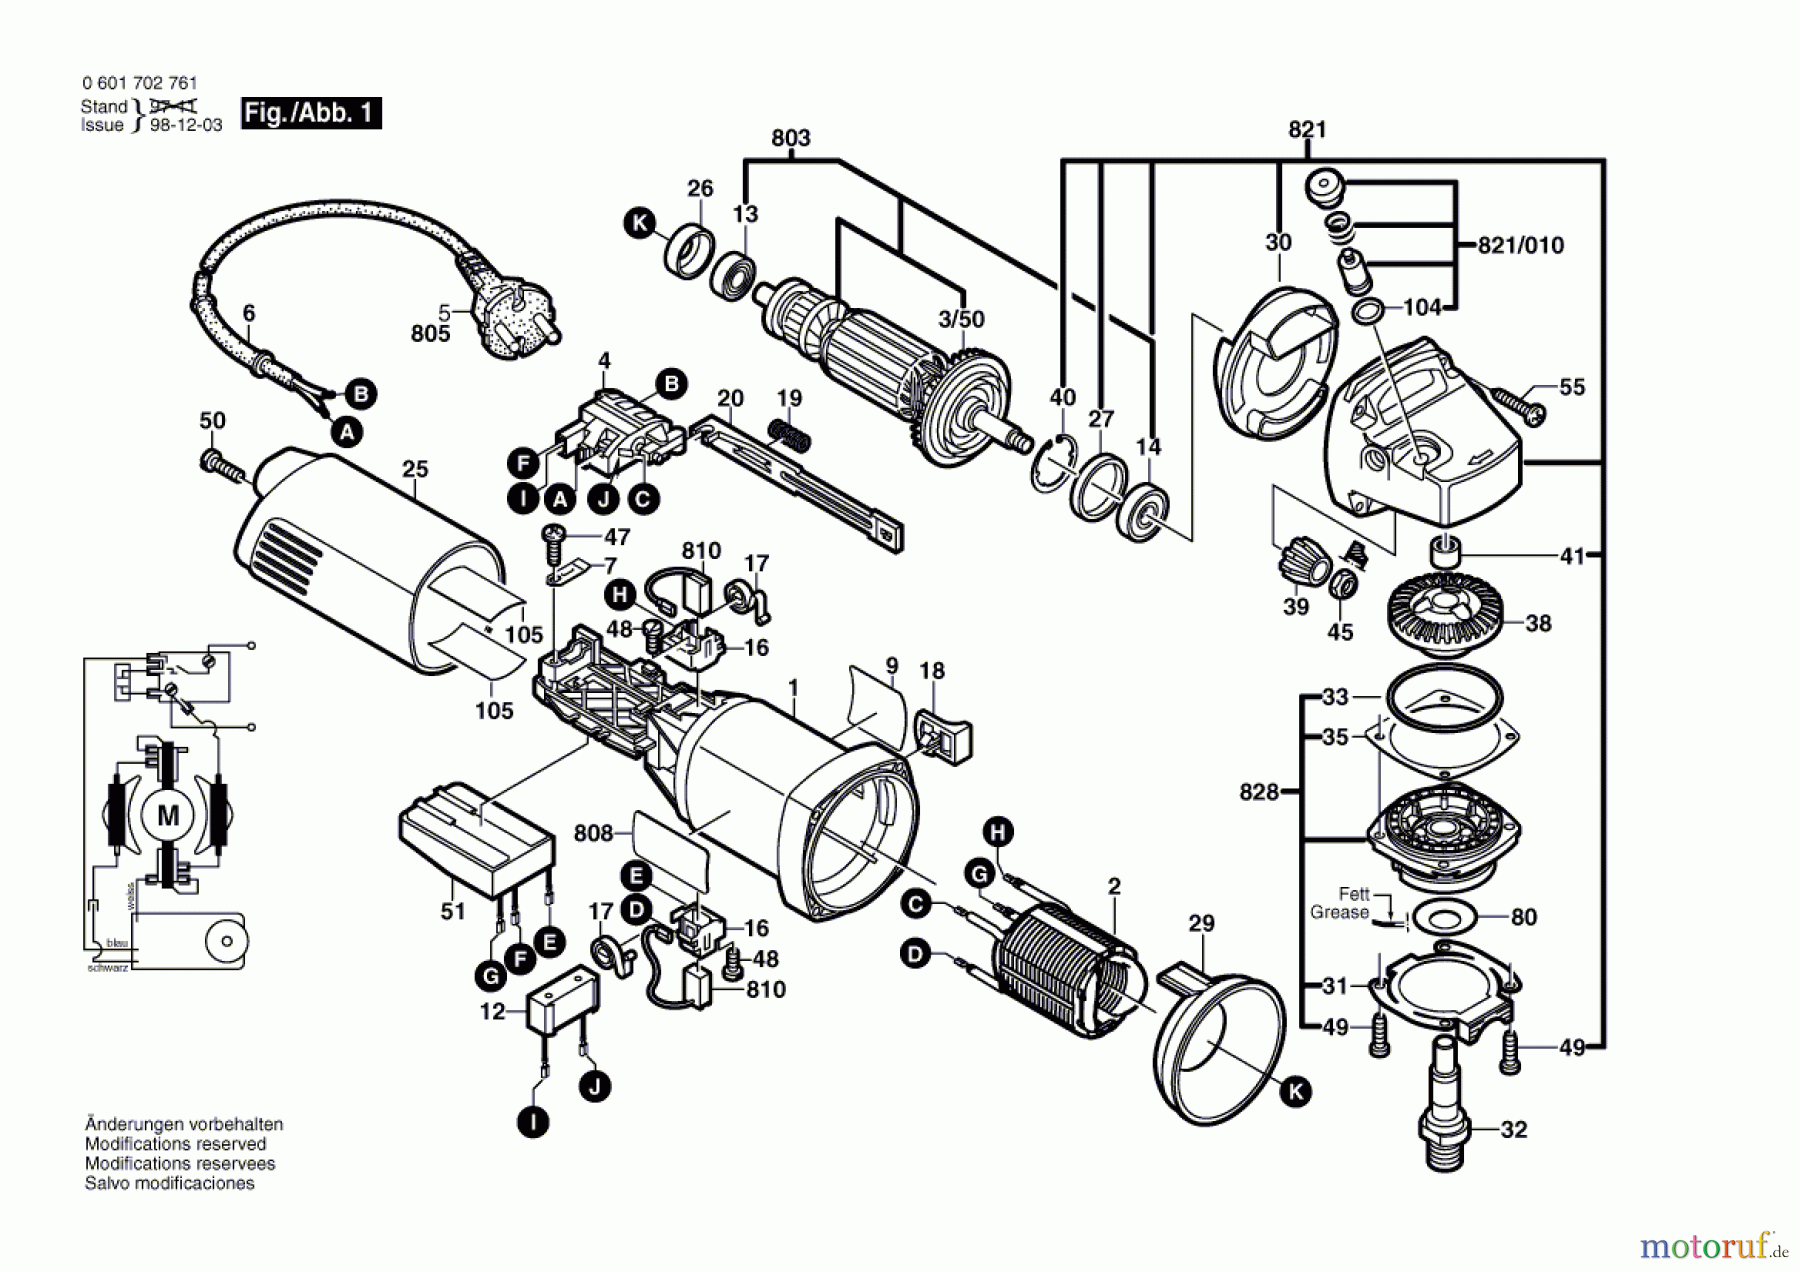  Bosch Werkzeug Winkelschleifer BWS 10-125 C Seite 1